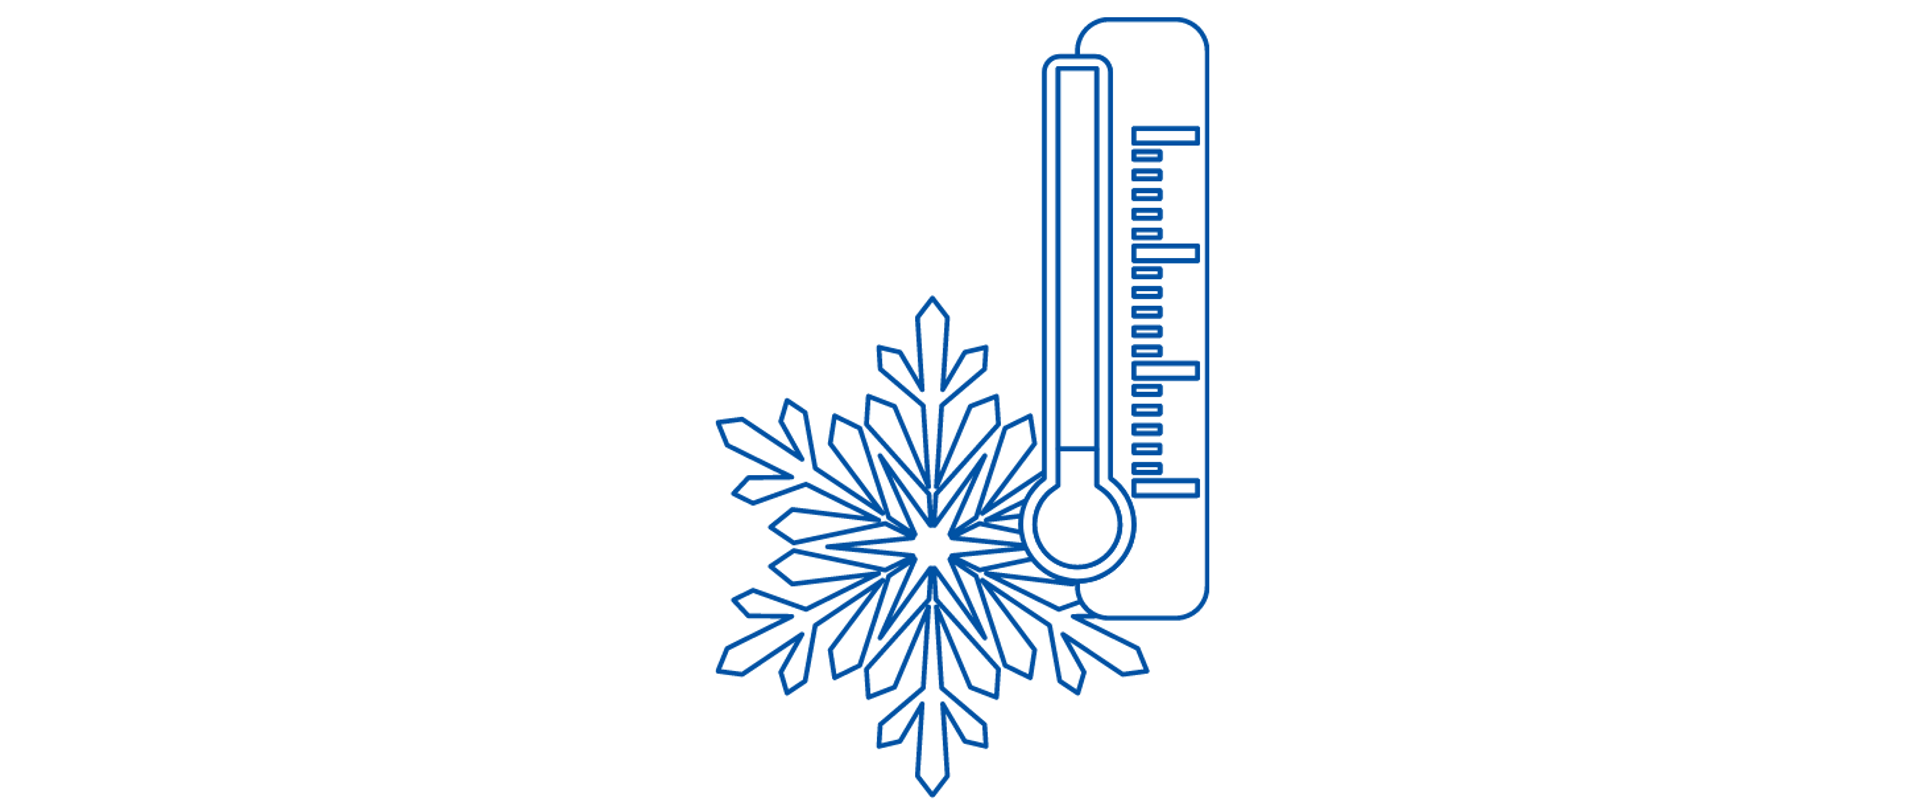 Niebieska ikona termometru wraz z płatkiem śniegu ukazująca niską temperaturę